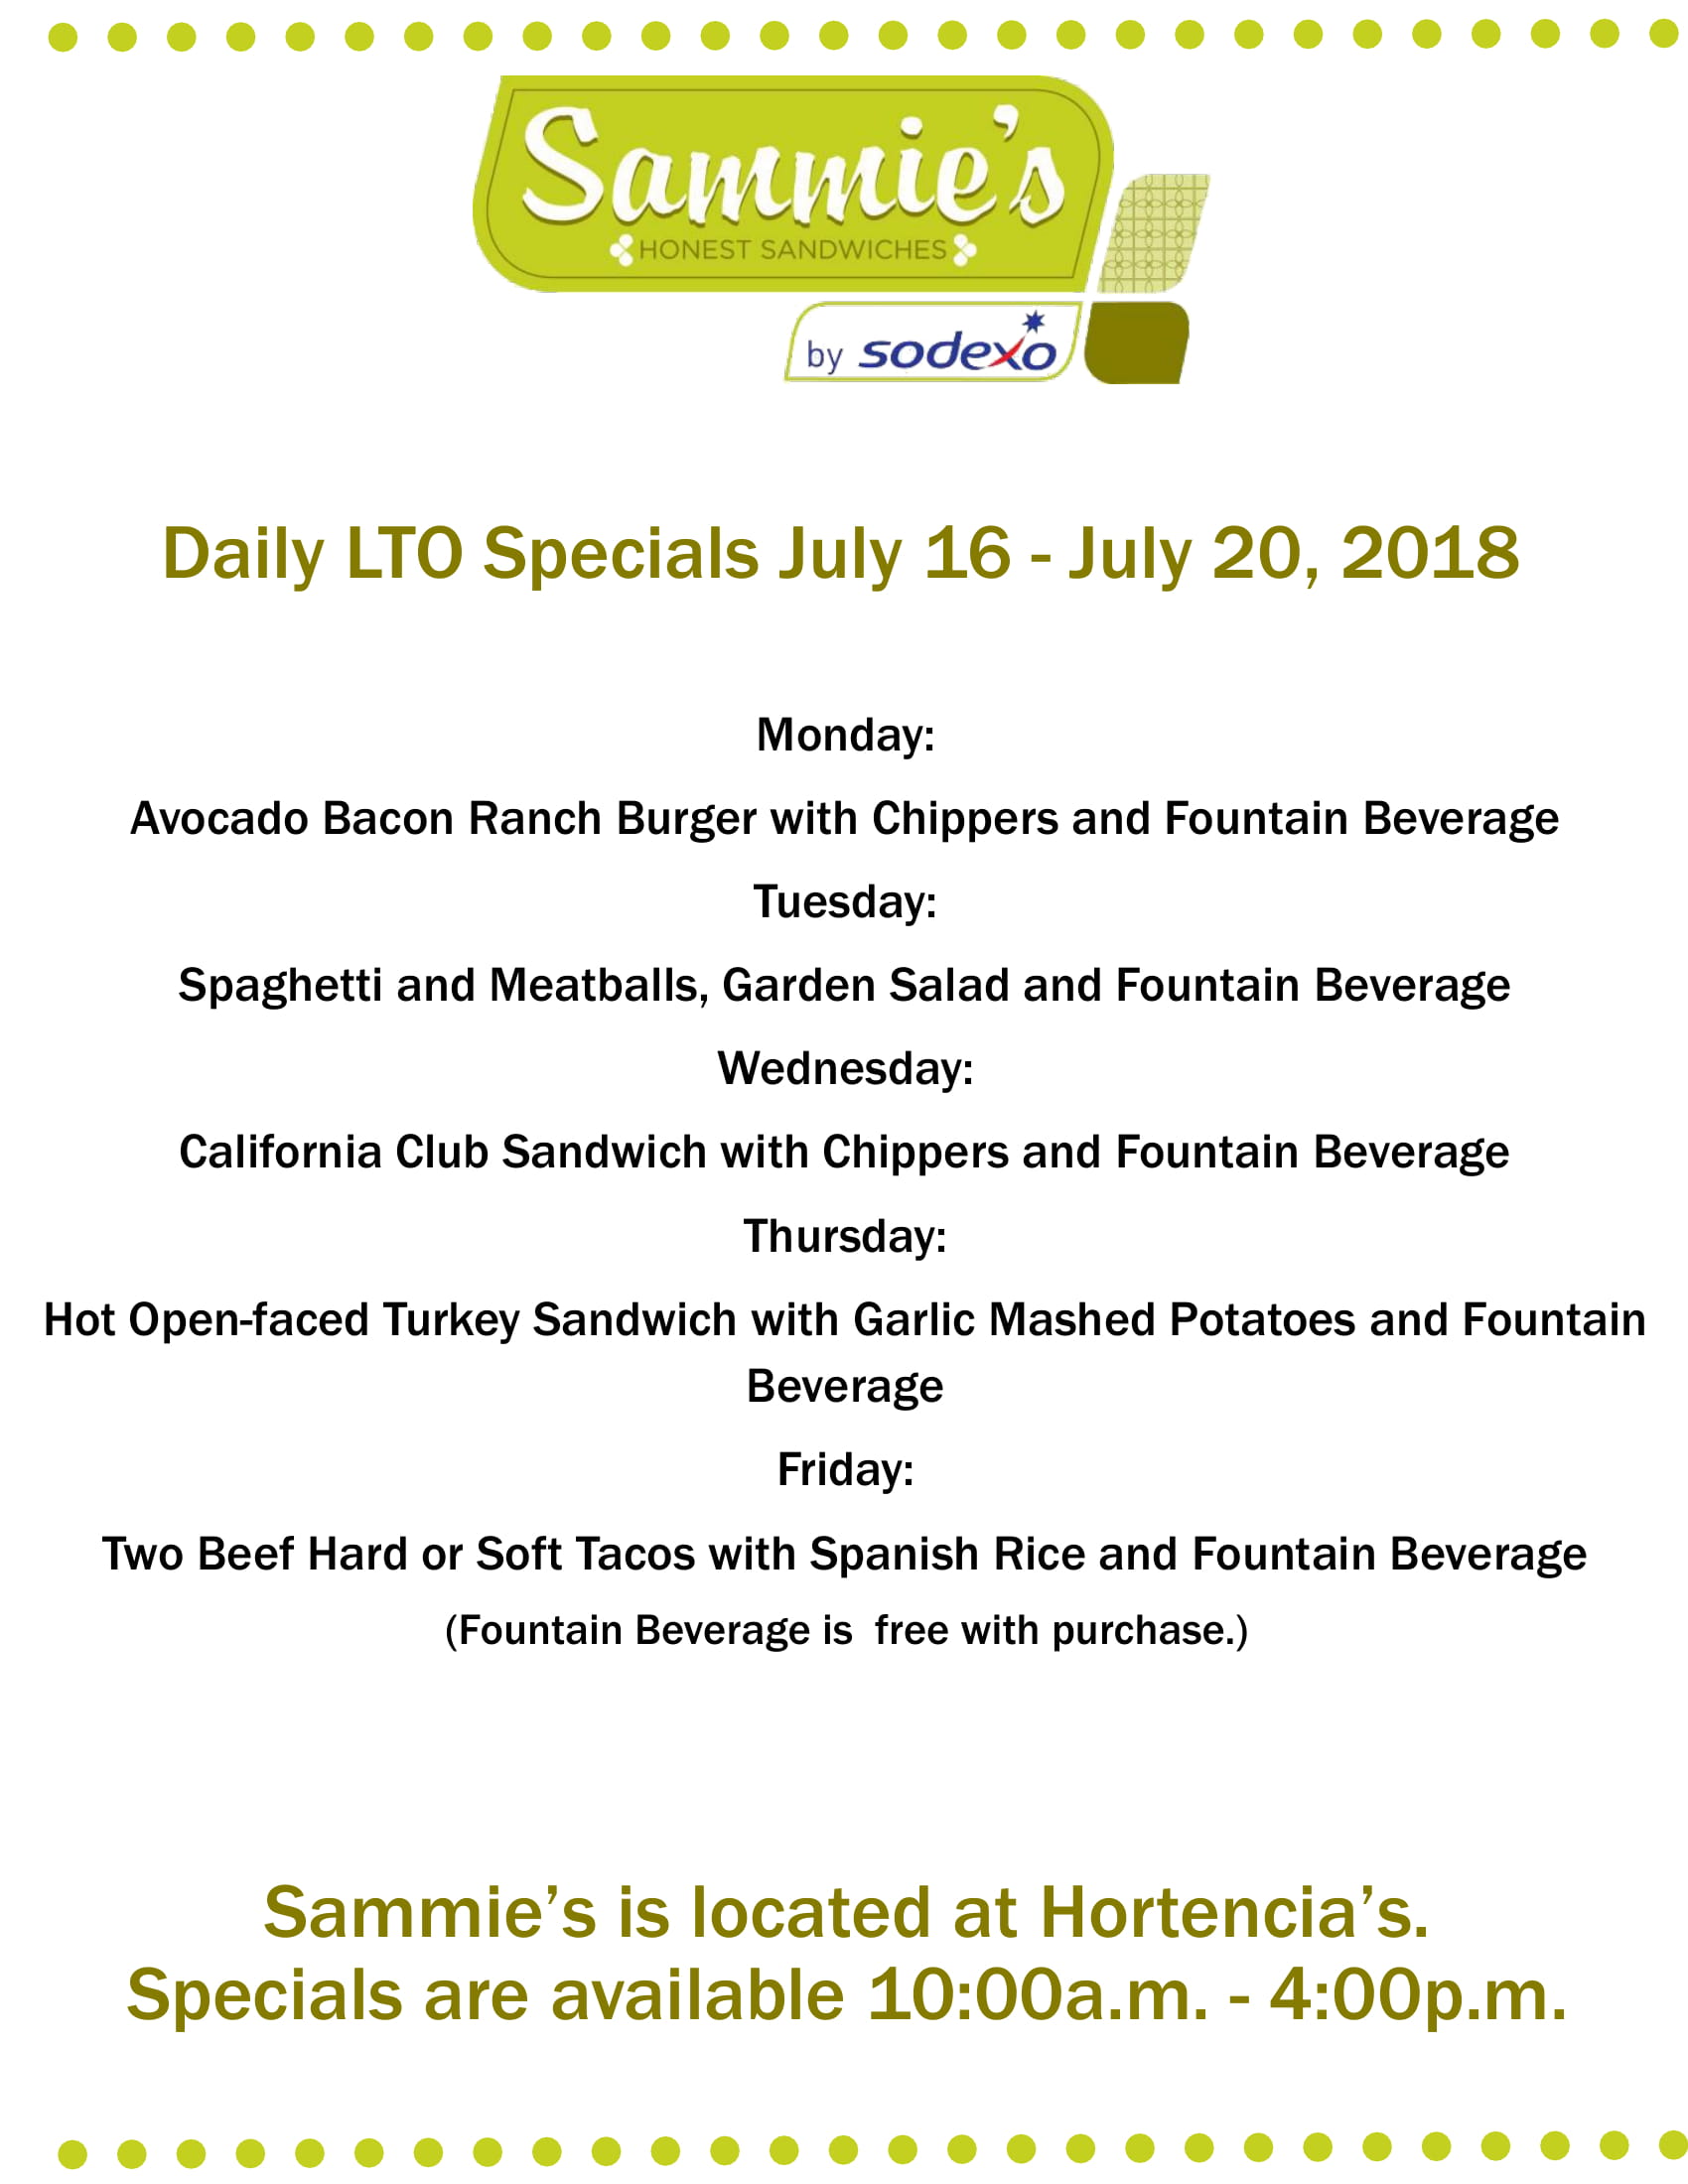 sammie's hortencia's summer specials 2018